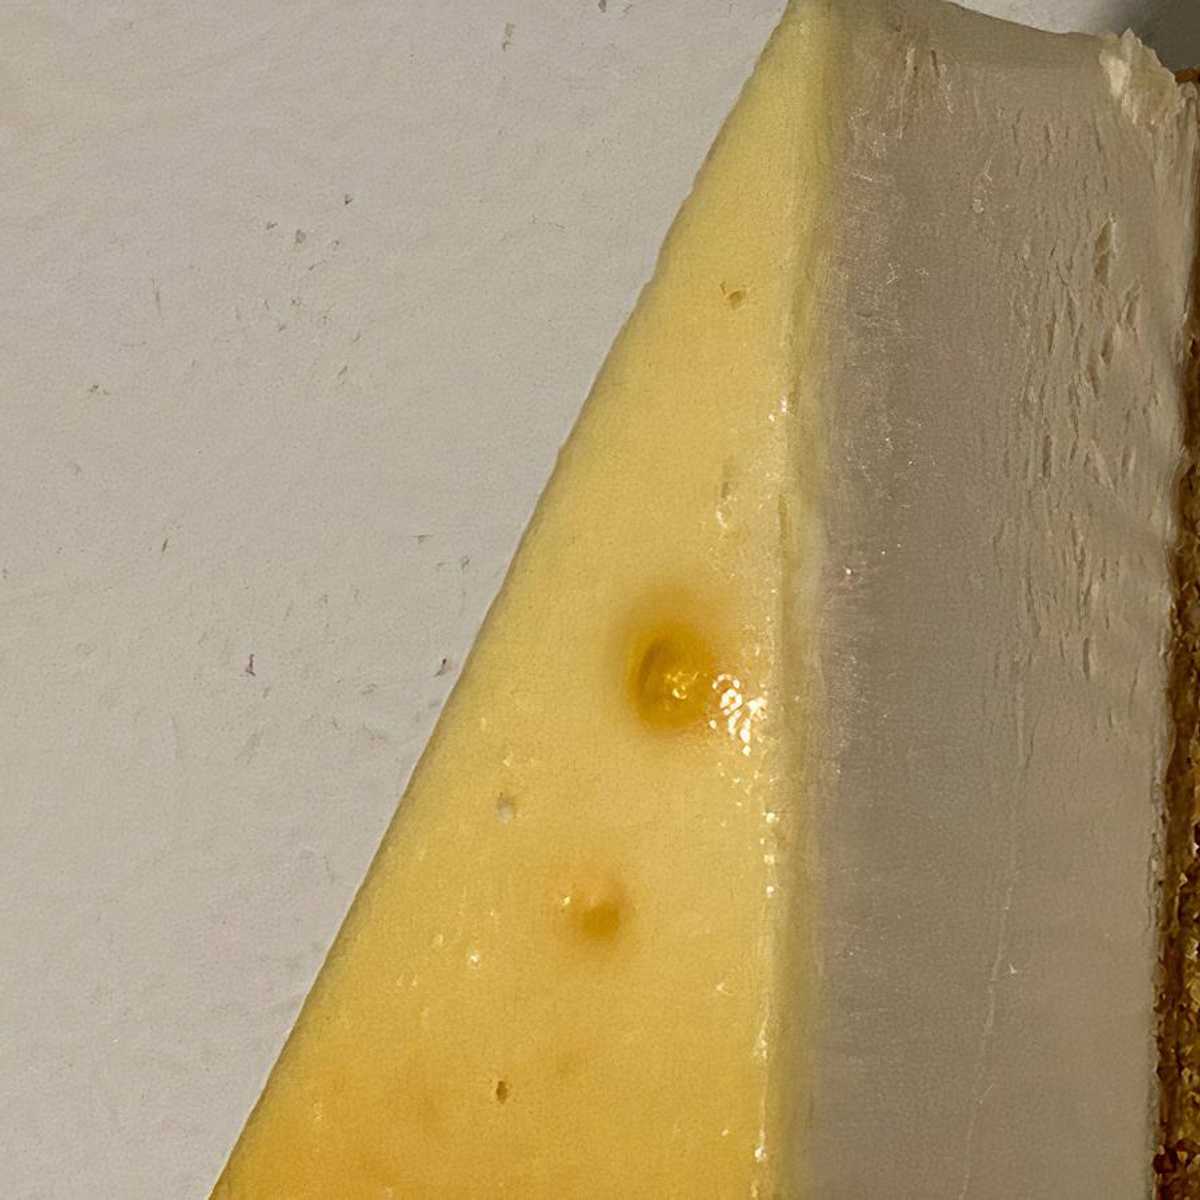 Käse weiße punkte